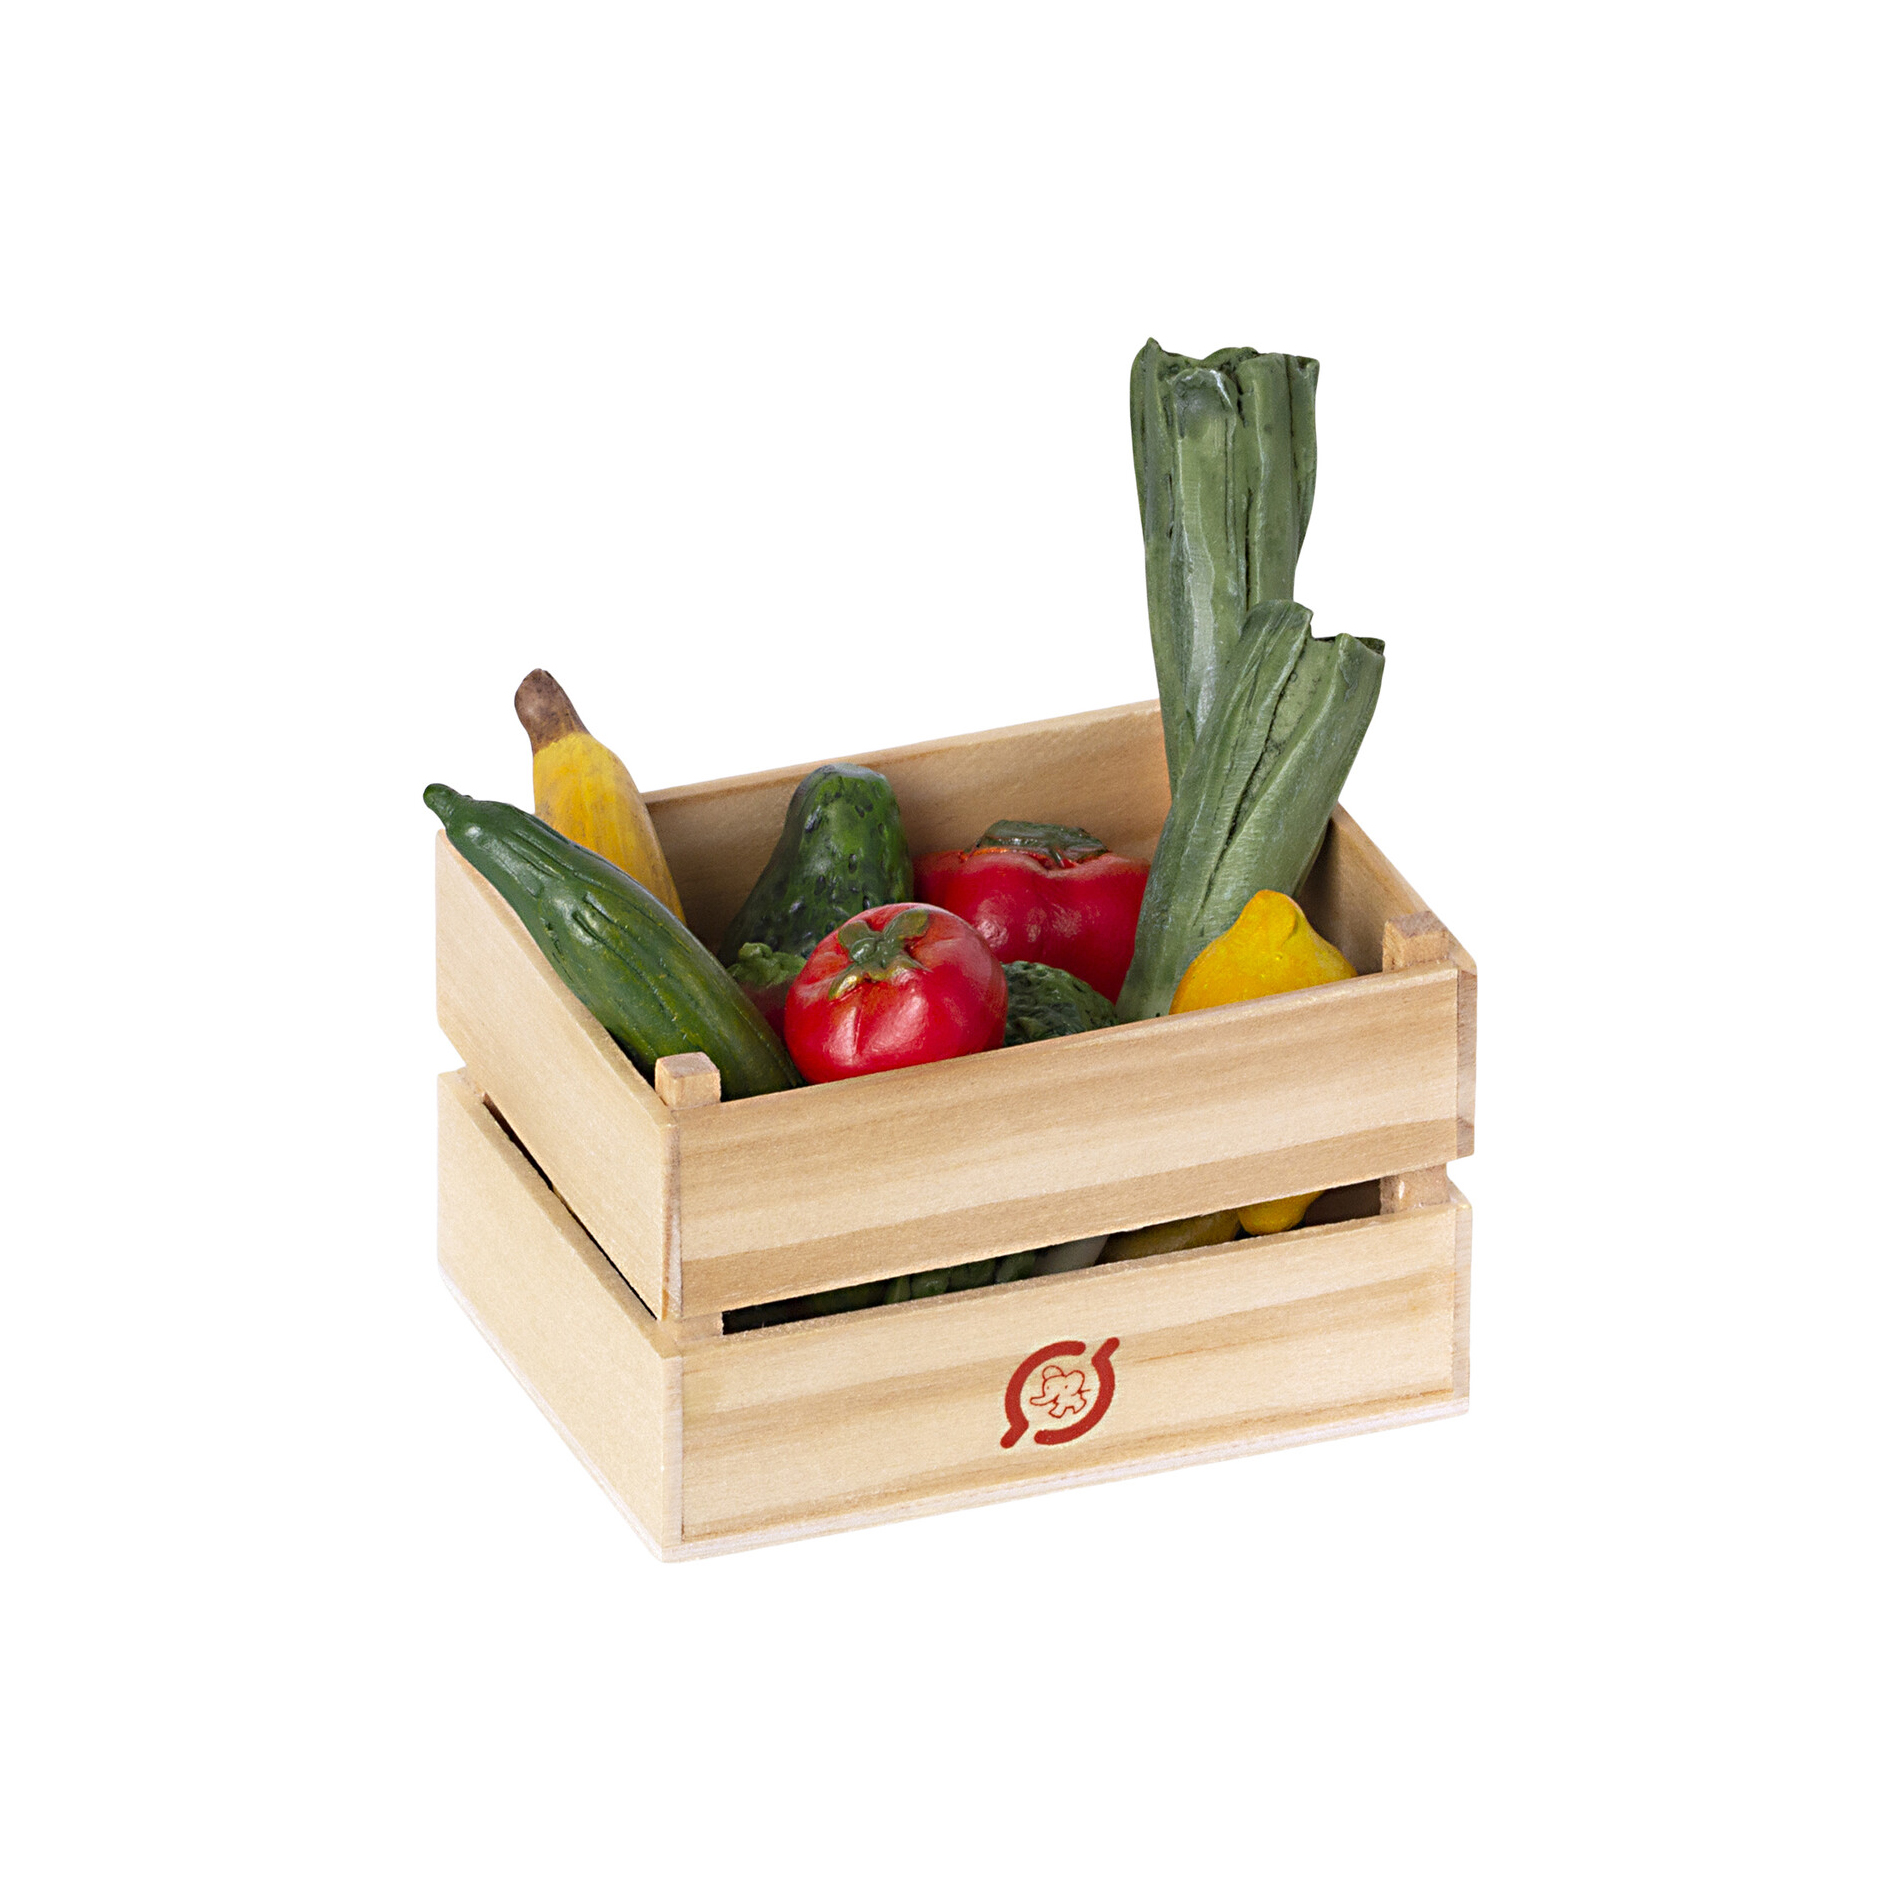 Ящик с игрушечными овощами и фруктами, '21